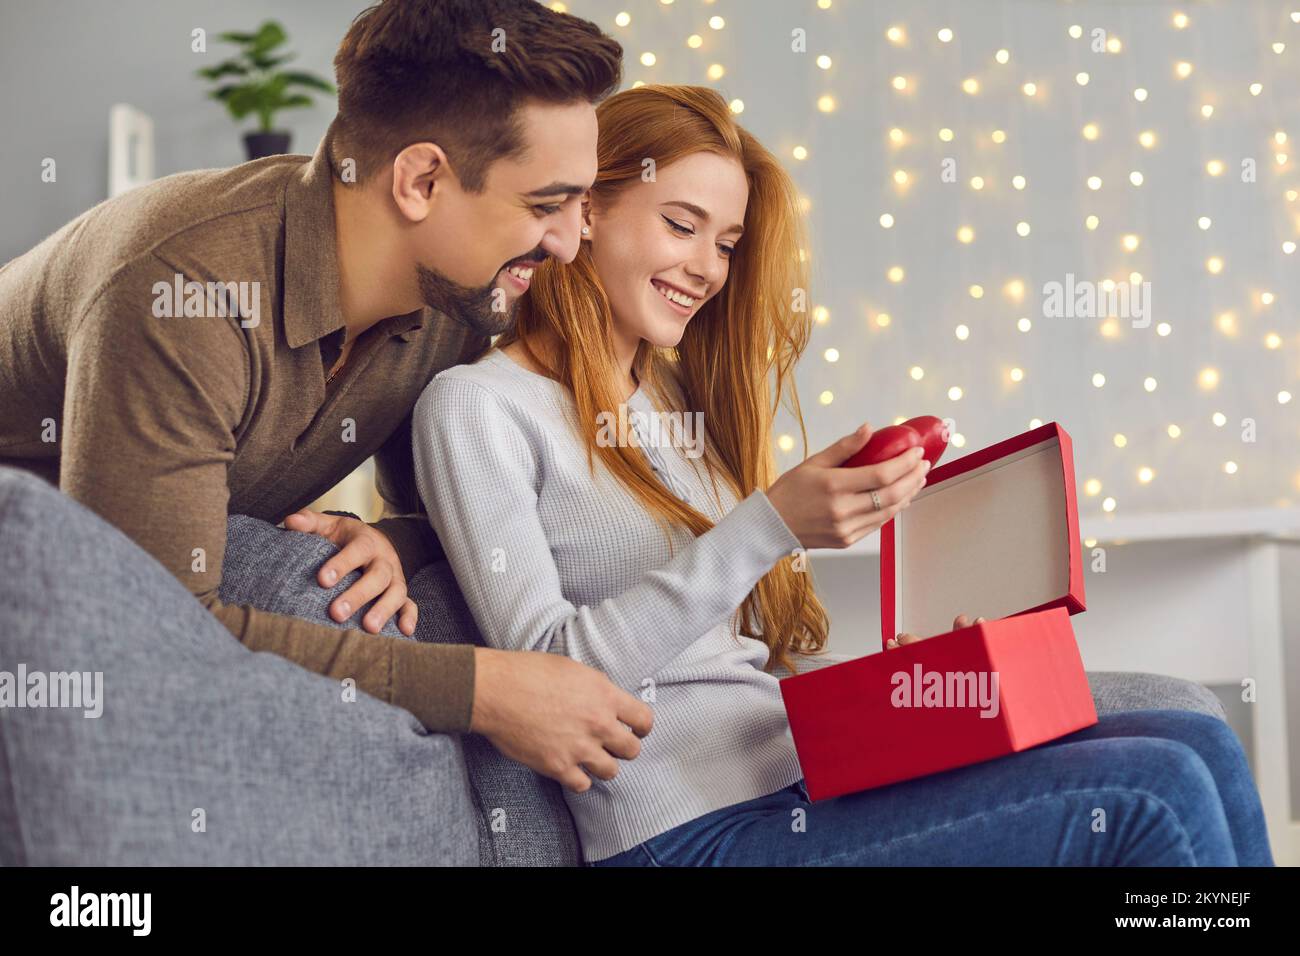 Femme souriante assise et sortant les coeurs rouges de la boîte cadeau de son petit ami Banque D'Images